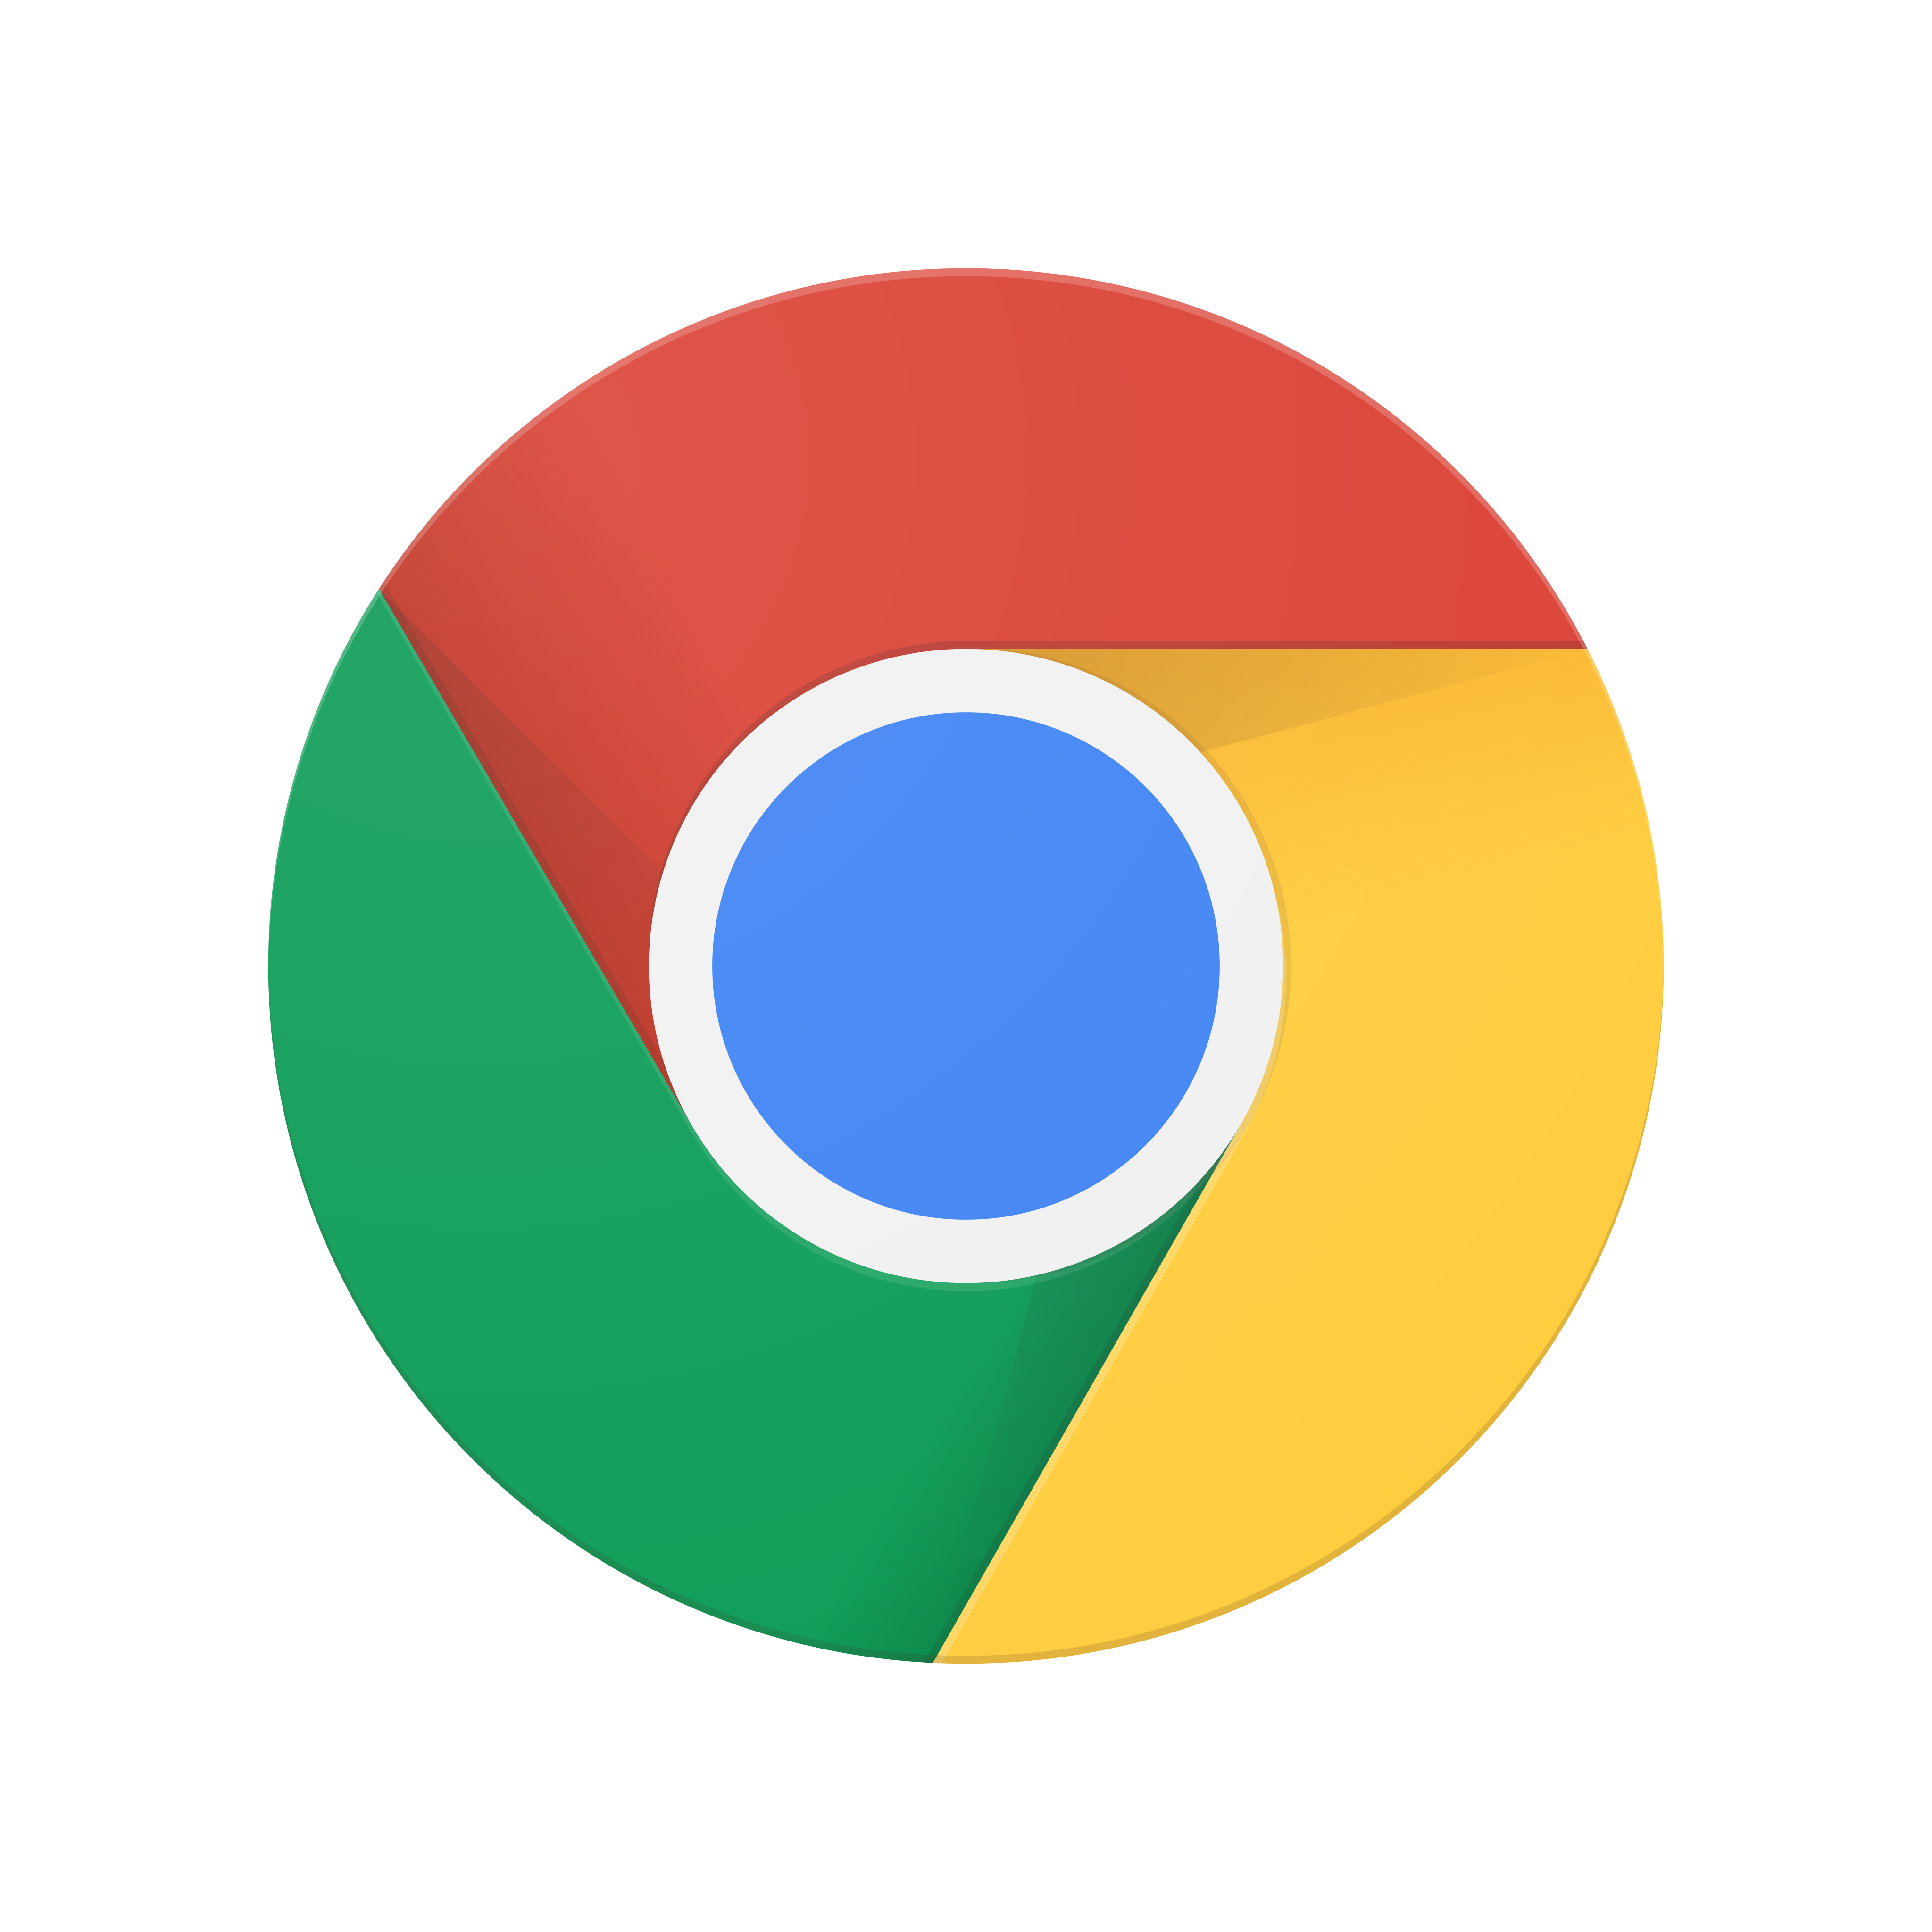 google chrome logo 0 - Google Chrome Logo